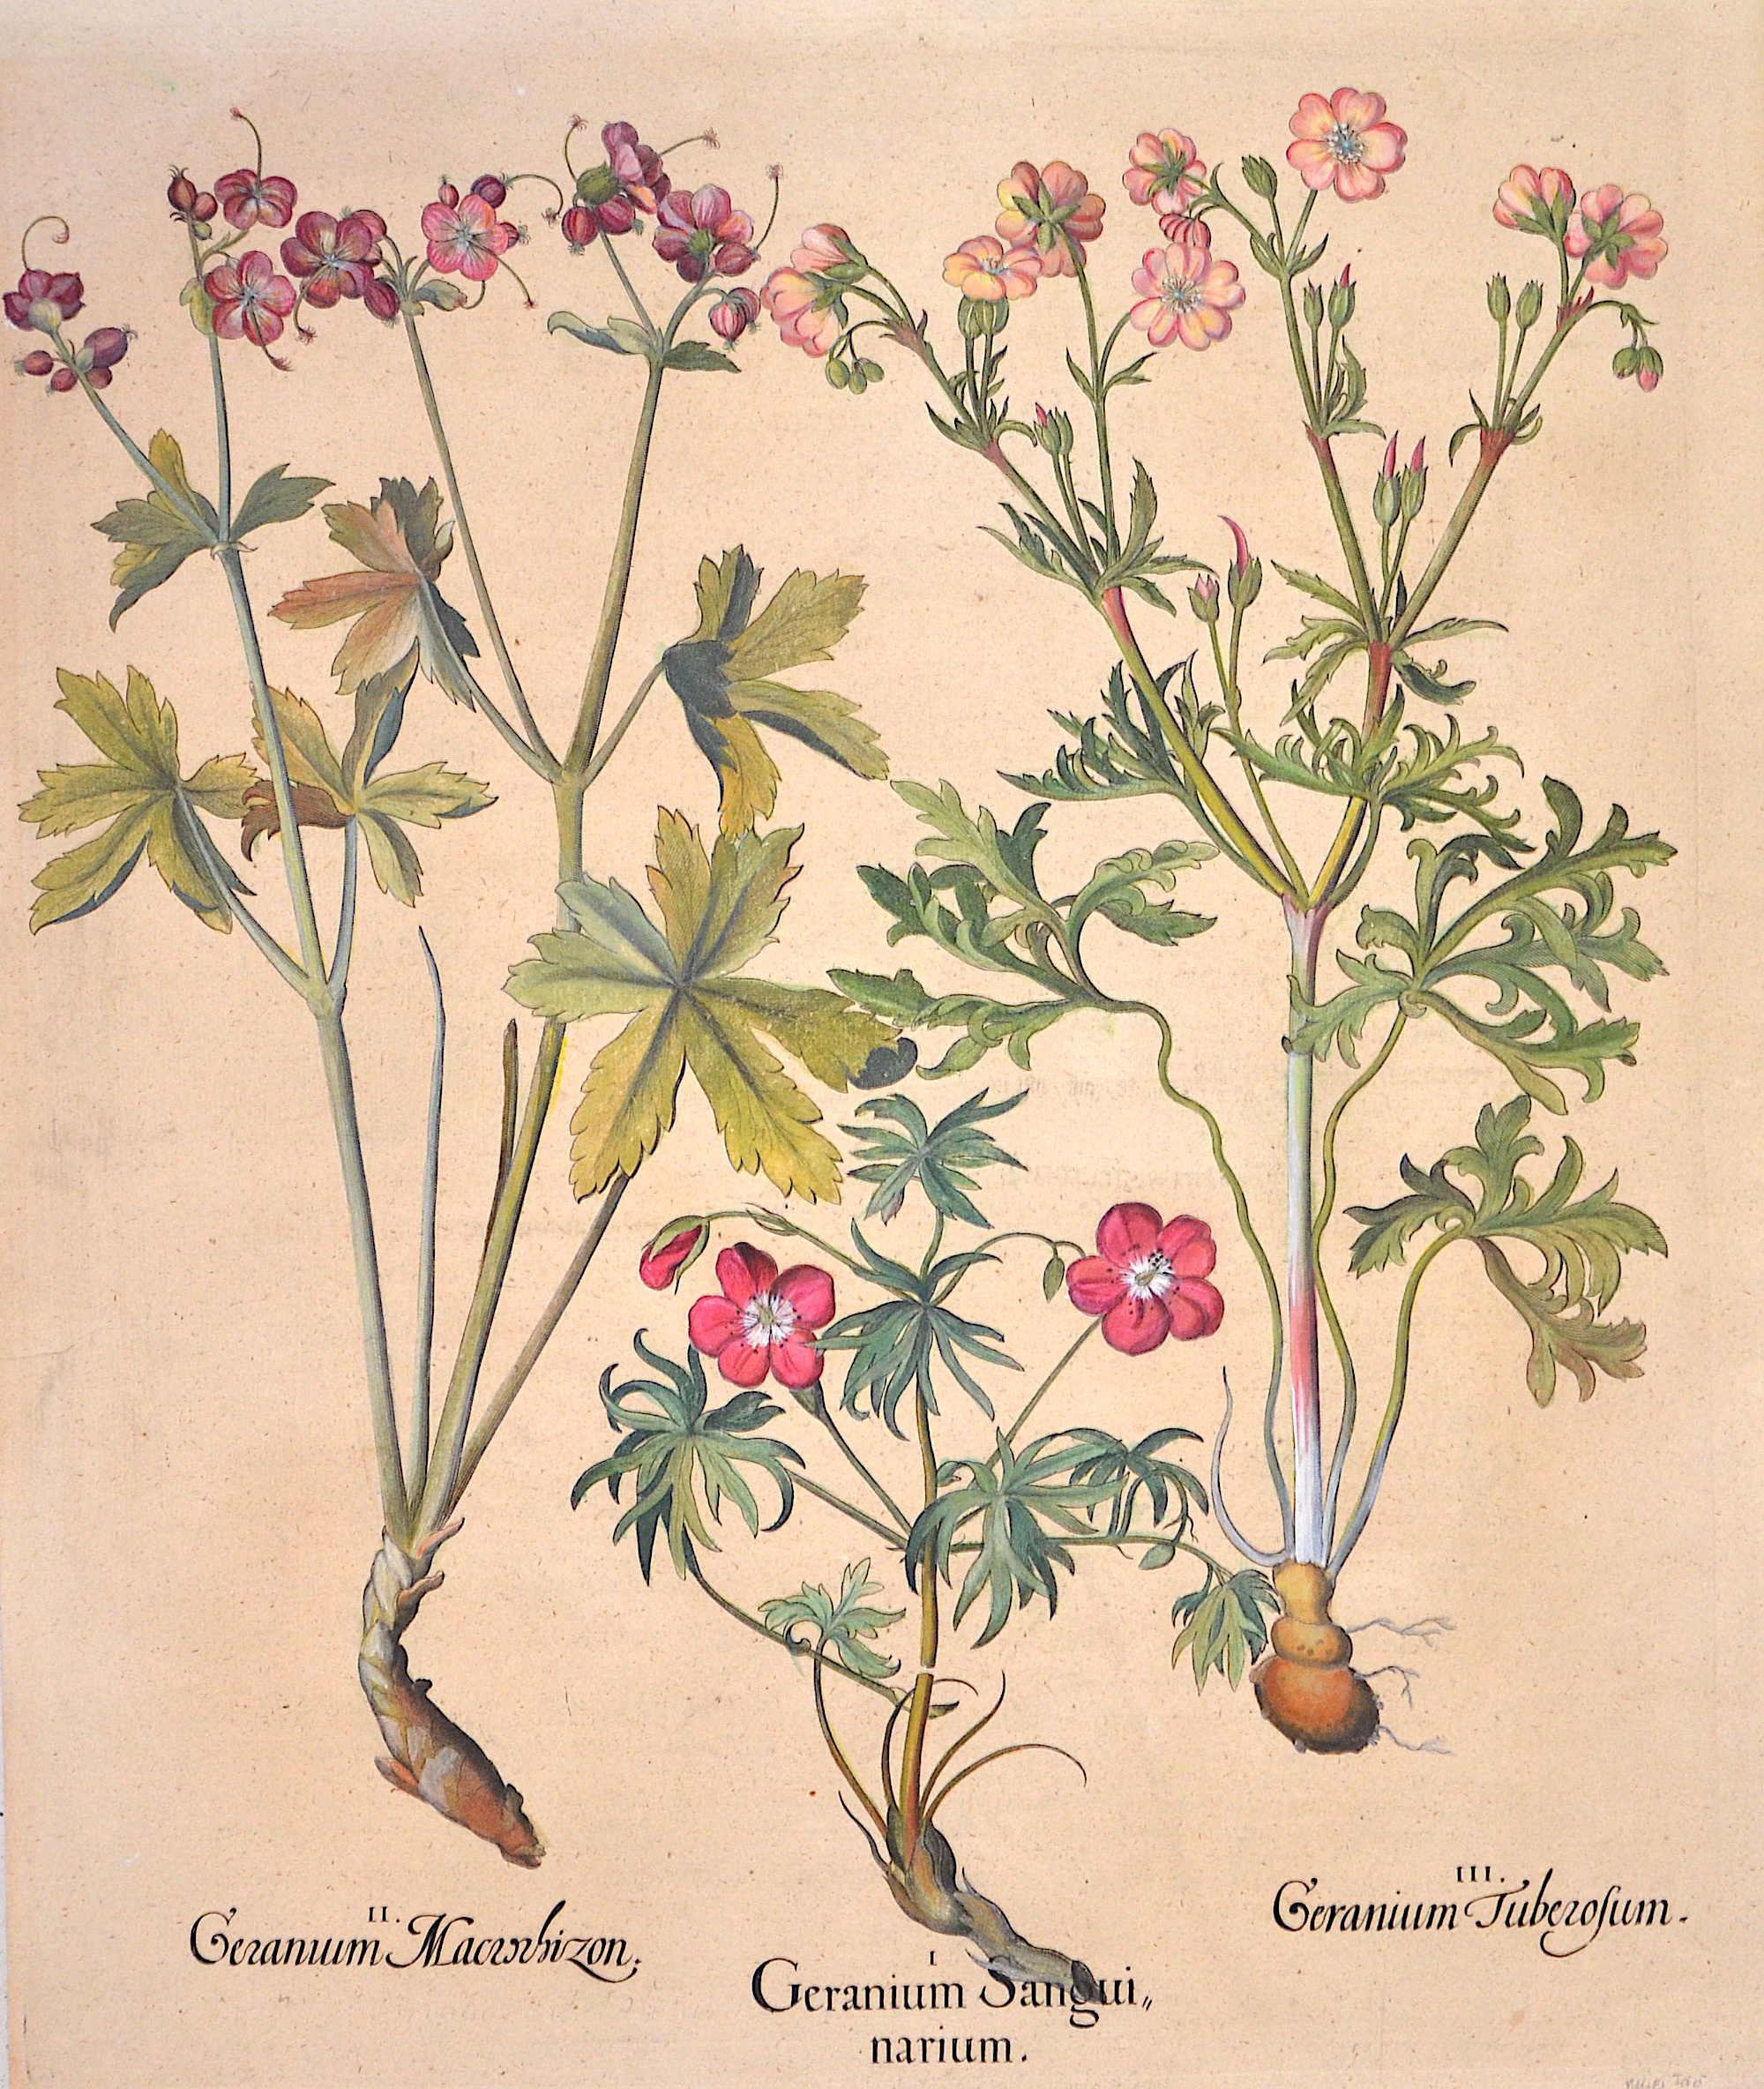 Besler Basilius II. Geranum Macrochizon. I. Geranium Sanguinarium. III.Geranium Tuberosum.